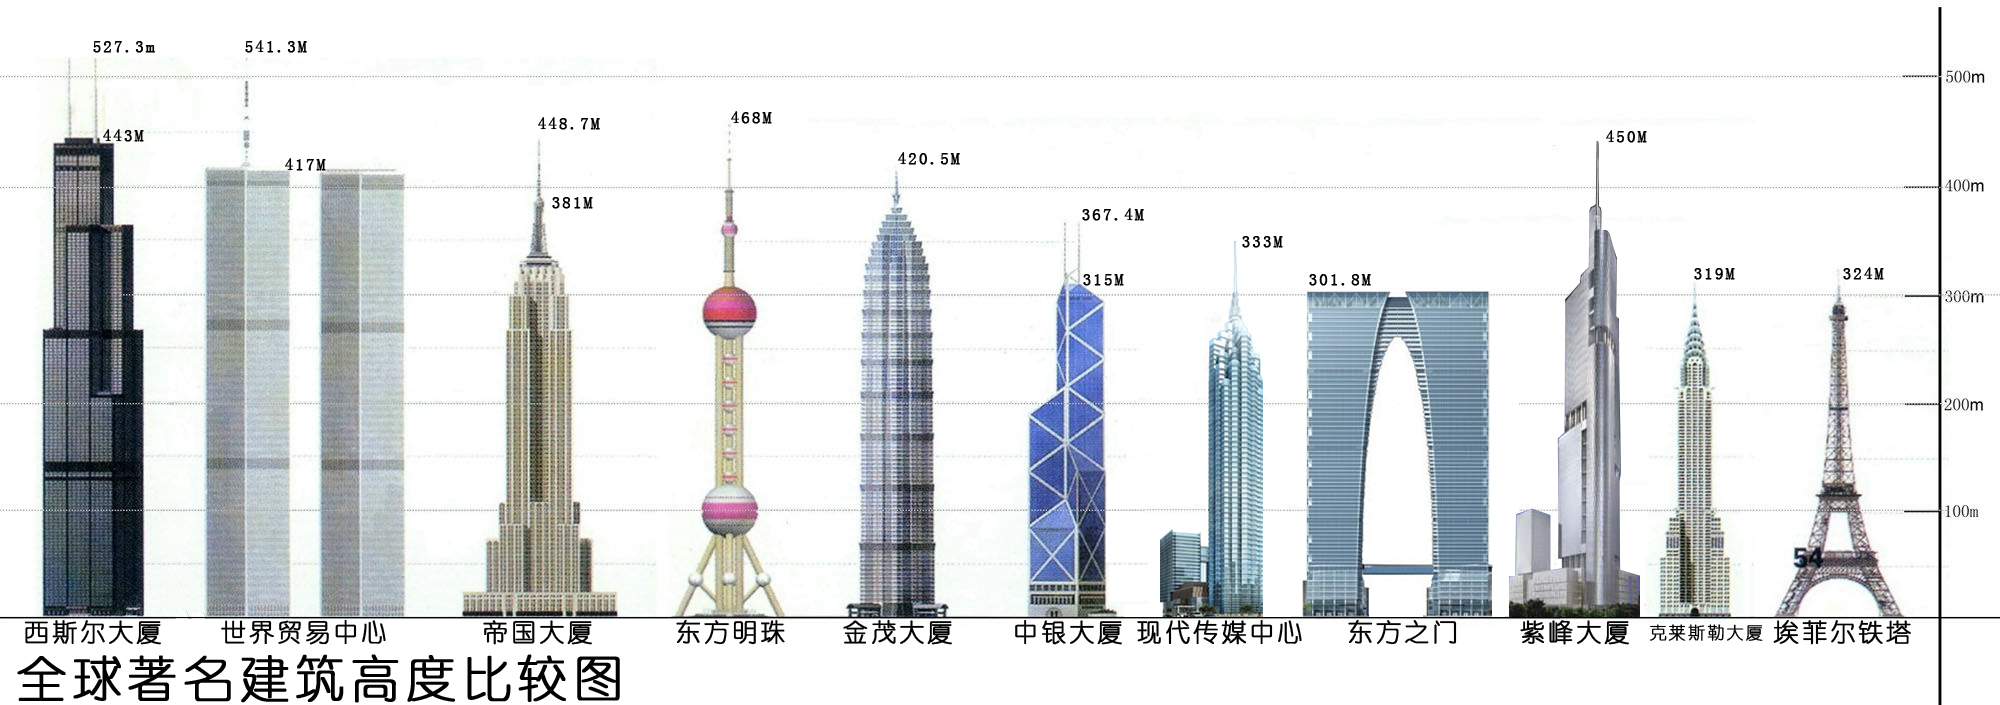 全球著名建築高度對比圖